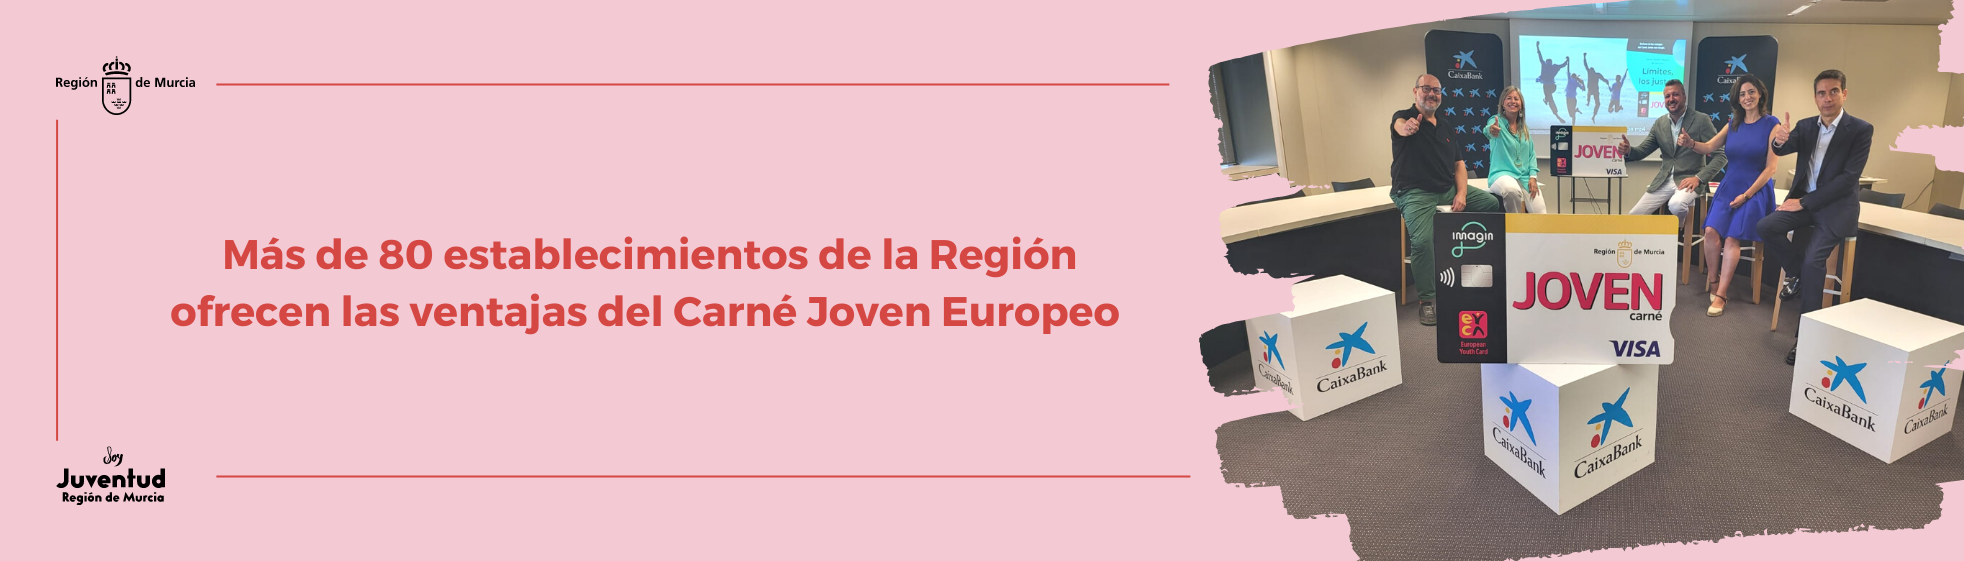 Más de 80 establecimientos de la Región ofrecen las ventajas del Carné Joven Europeo